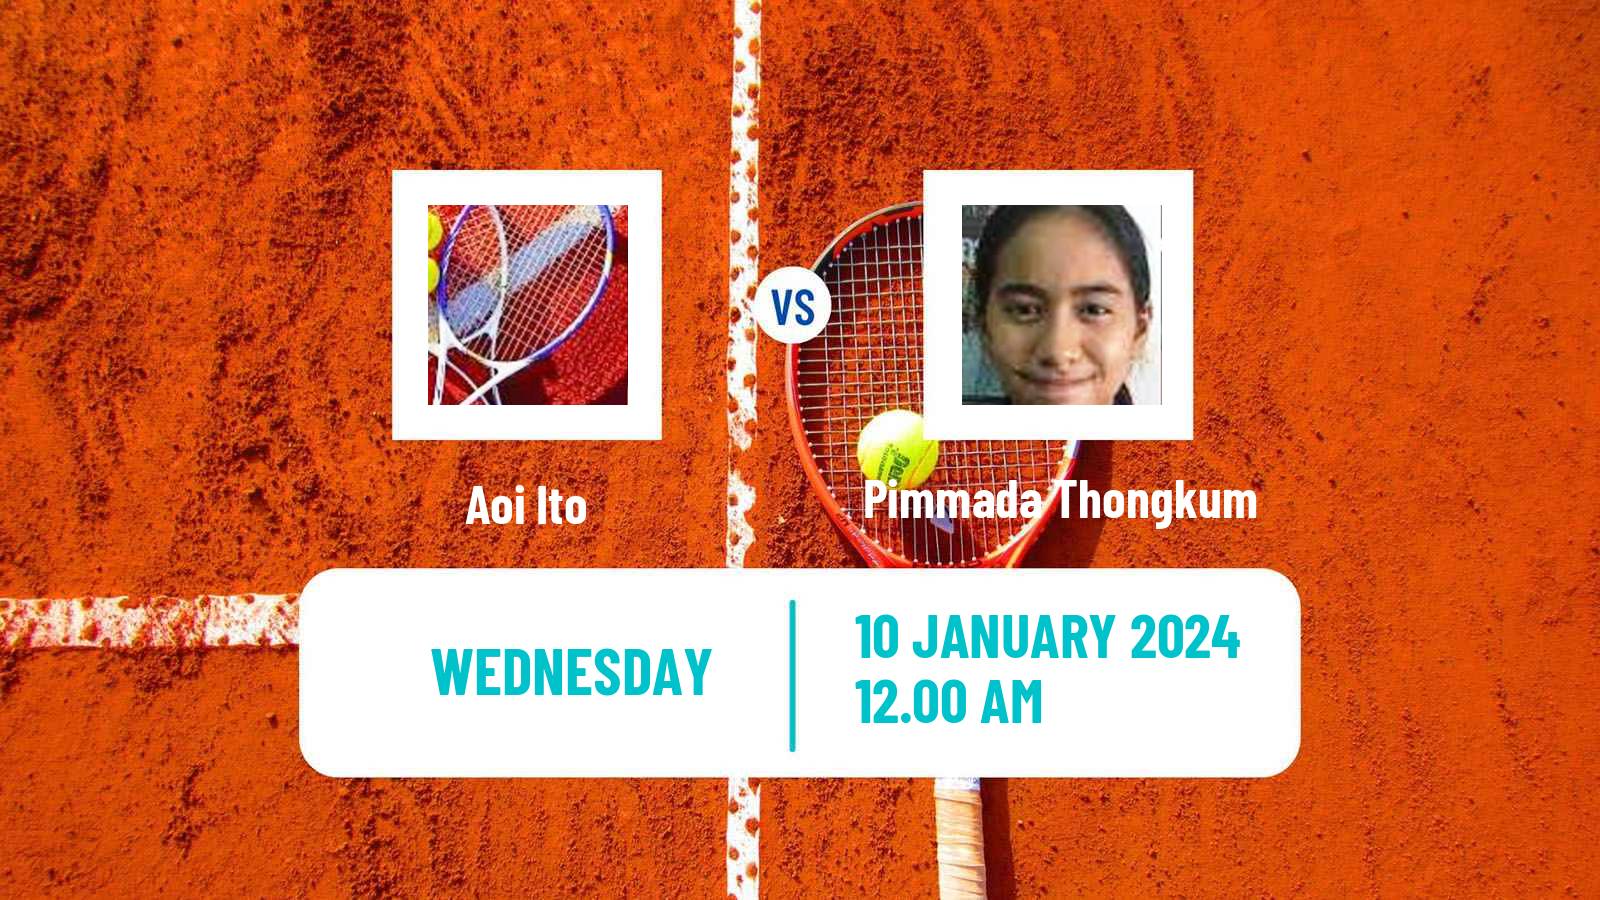 Tennis ITF W50 Nonthaburi 2 Women Aoi Ito - Pimmada Thongkum